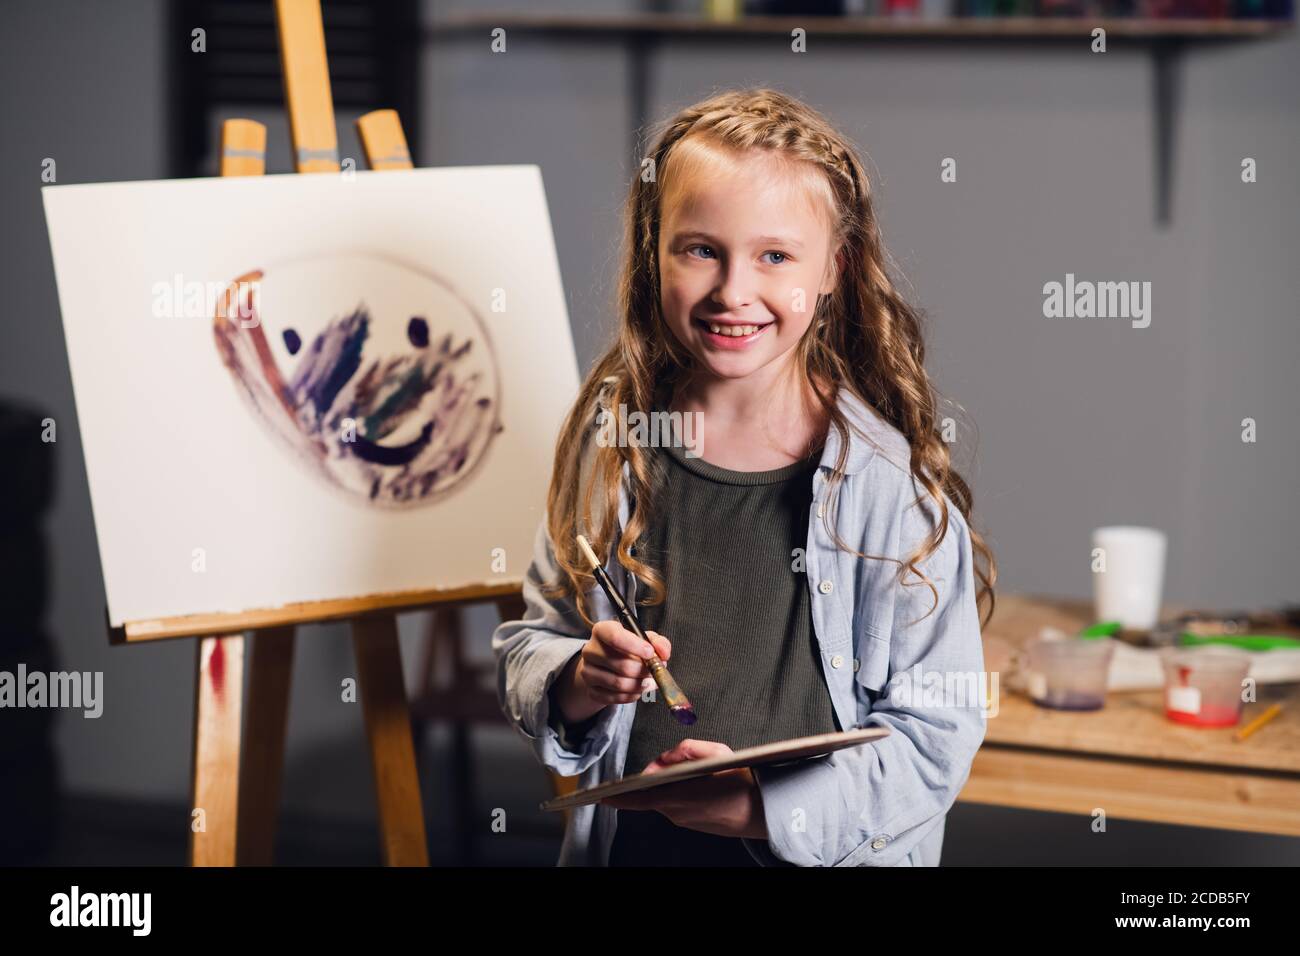 Primera lección en la escuela de arte, una niña aprende a dibujar y hace su  primera pintura al óleo sobre lienzo Fotografía de stock - Alamy